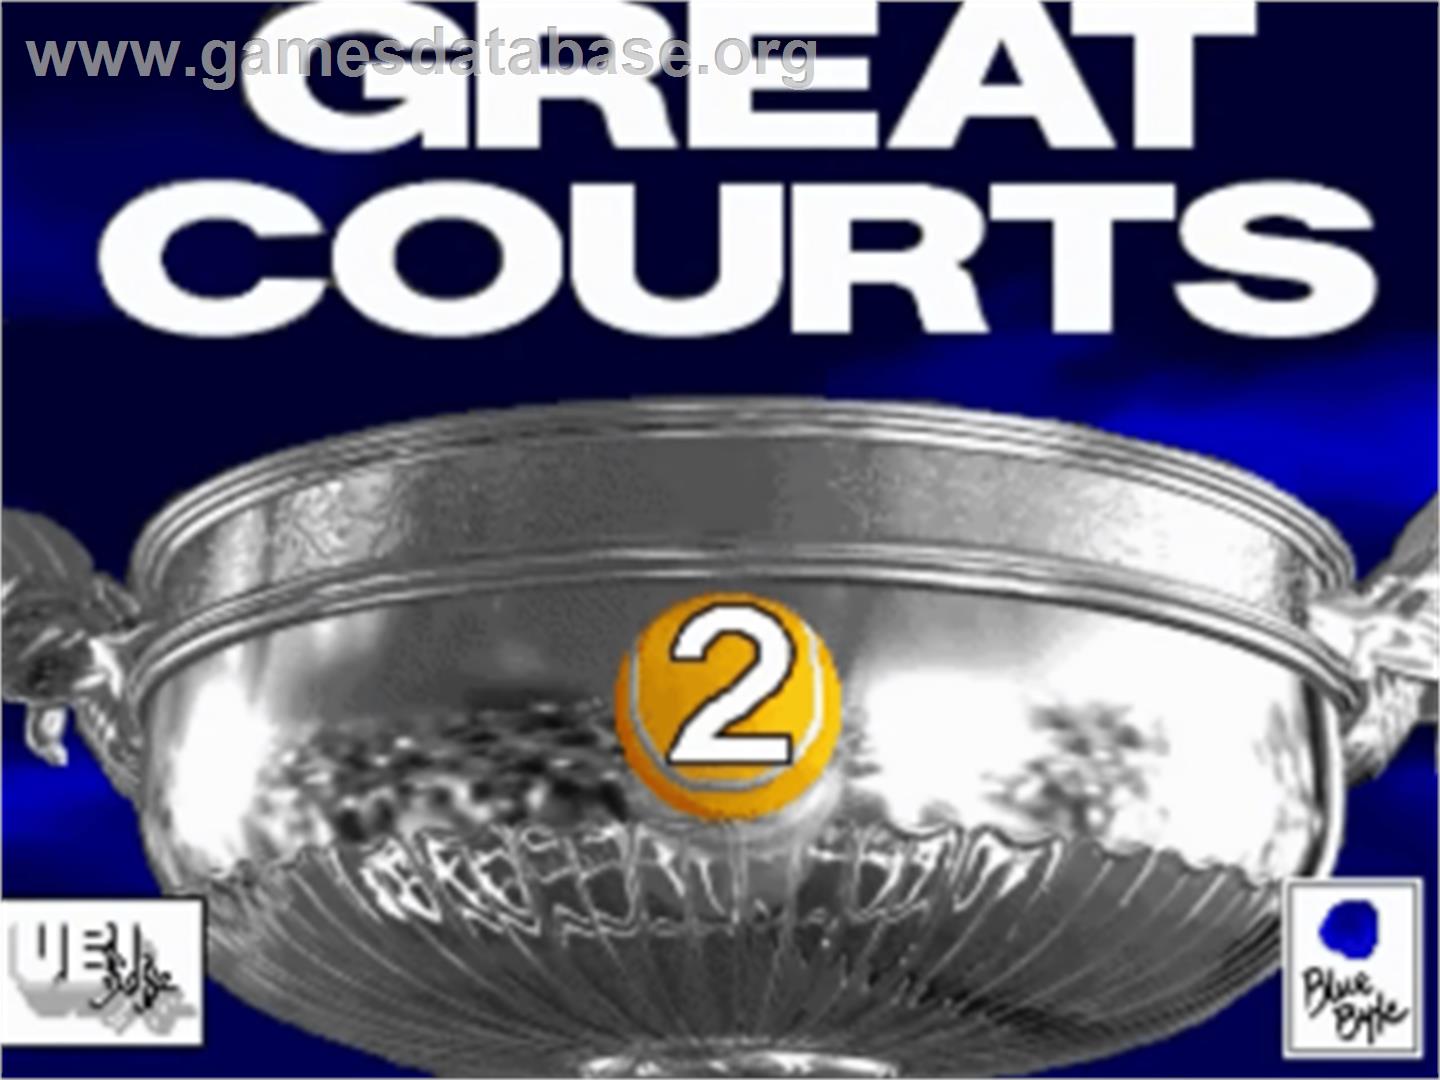 Great Courts 2 - Commodore Amiga - Artwork - Title Screen